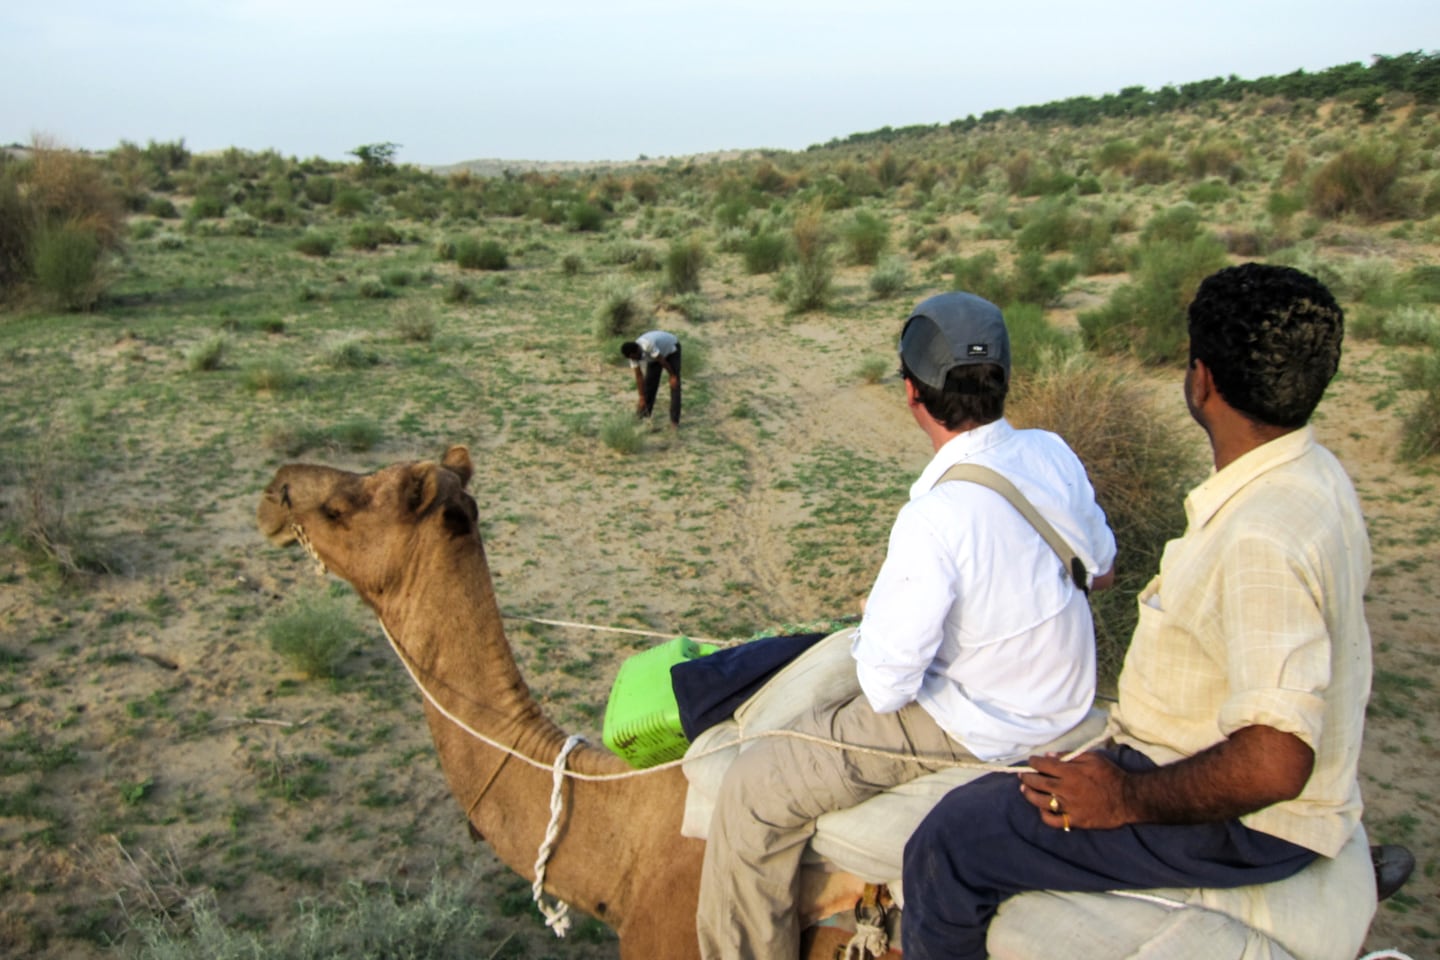 men on camel in the desert